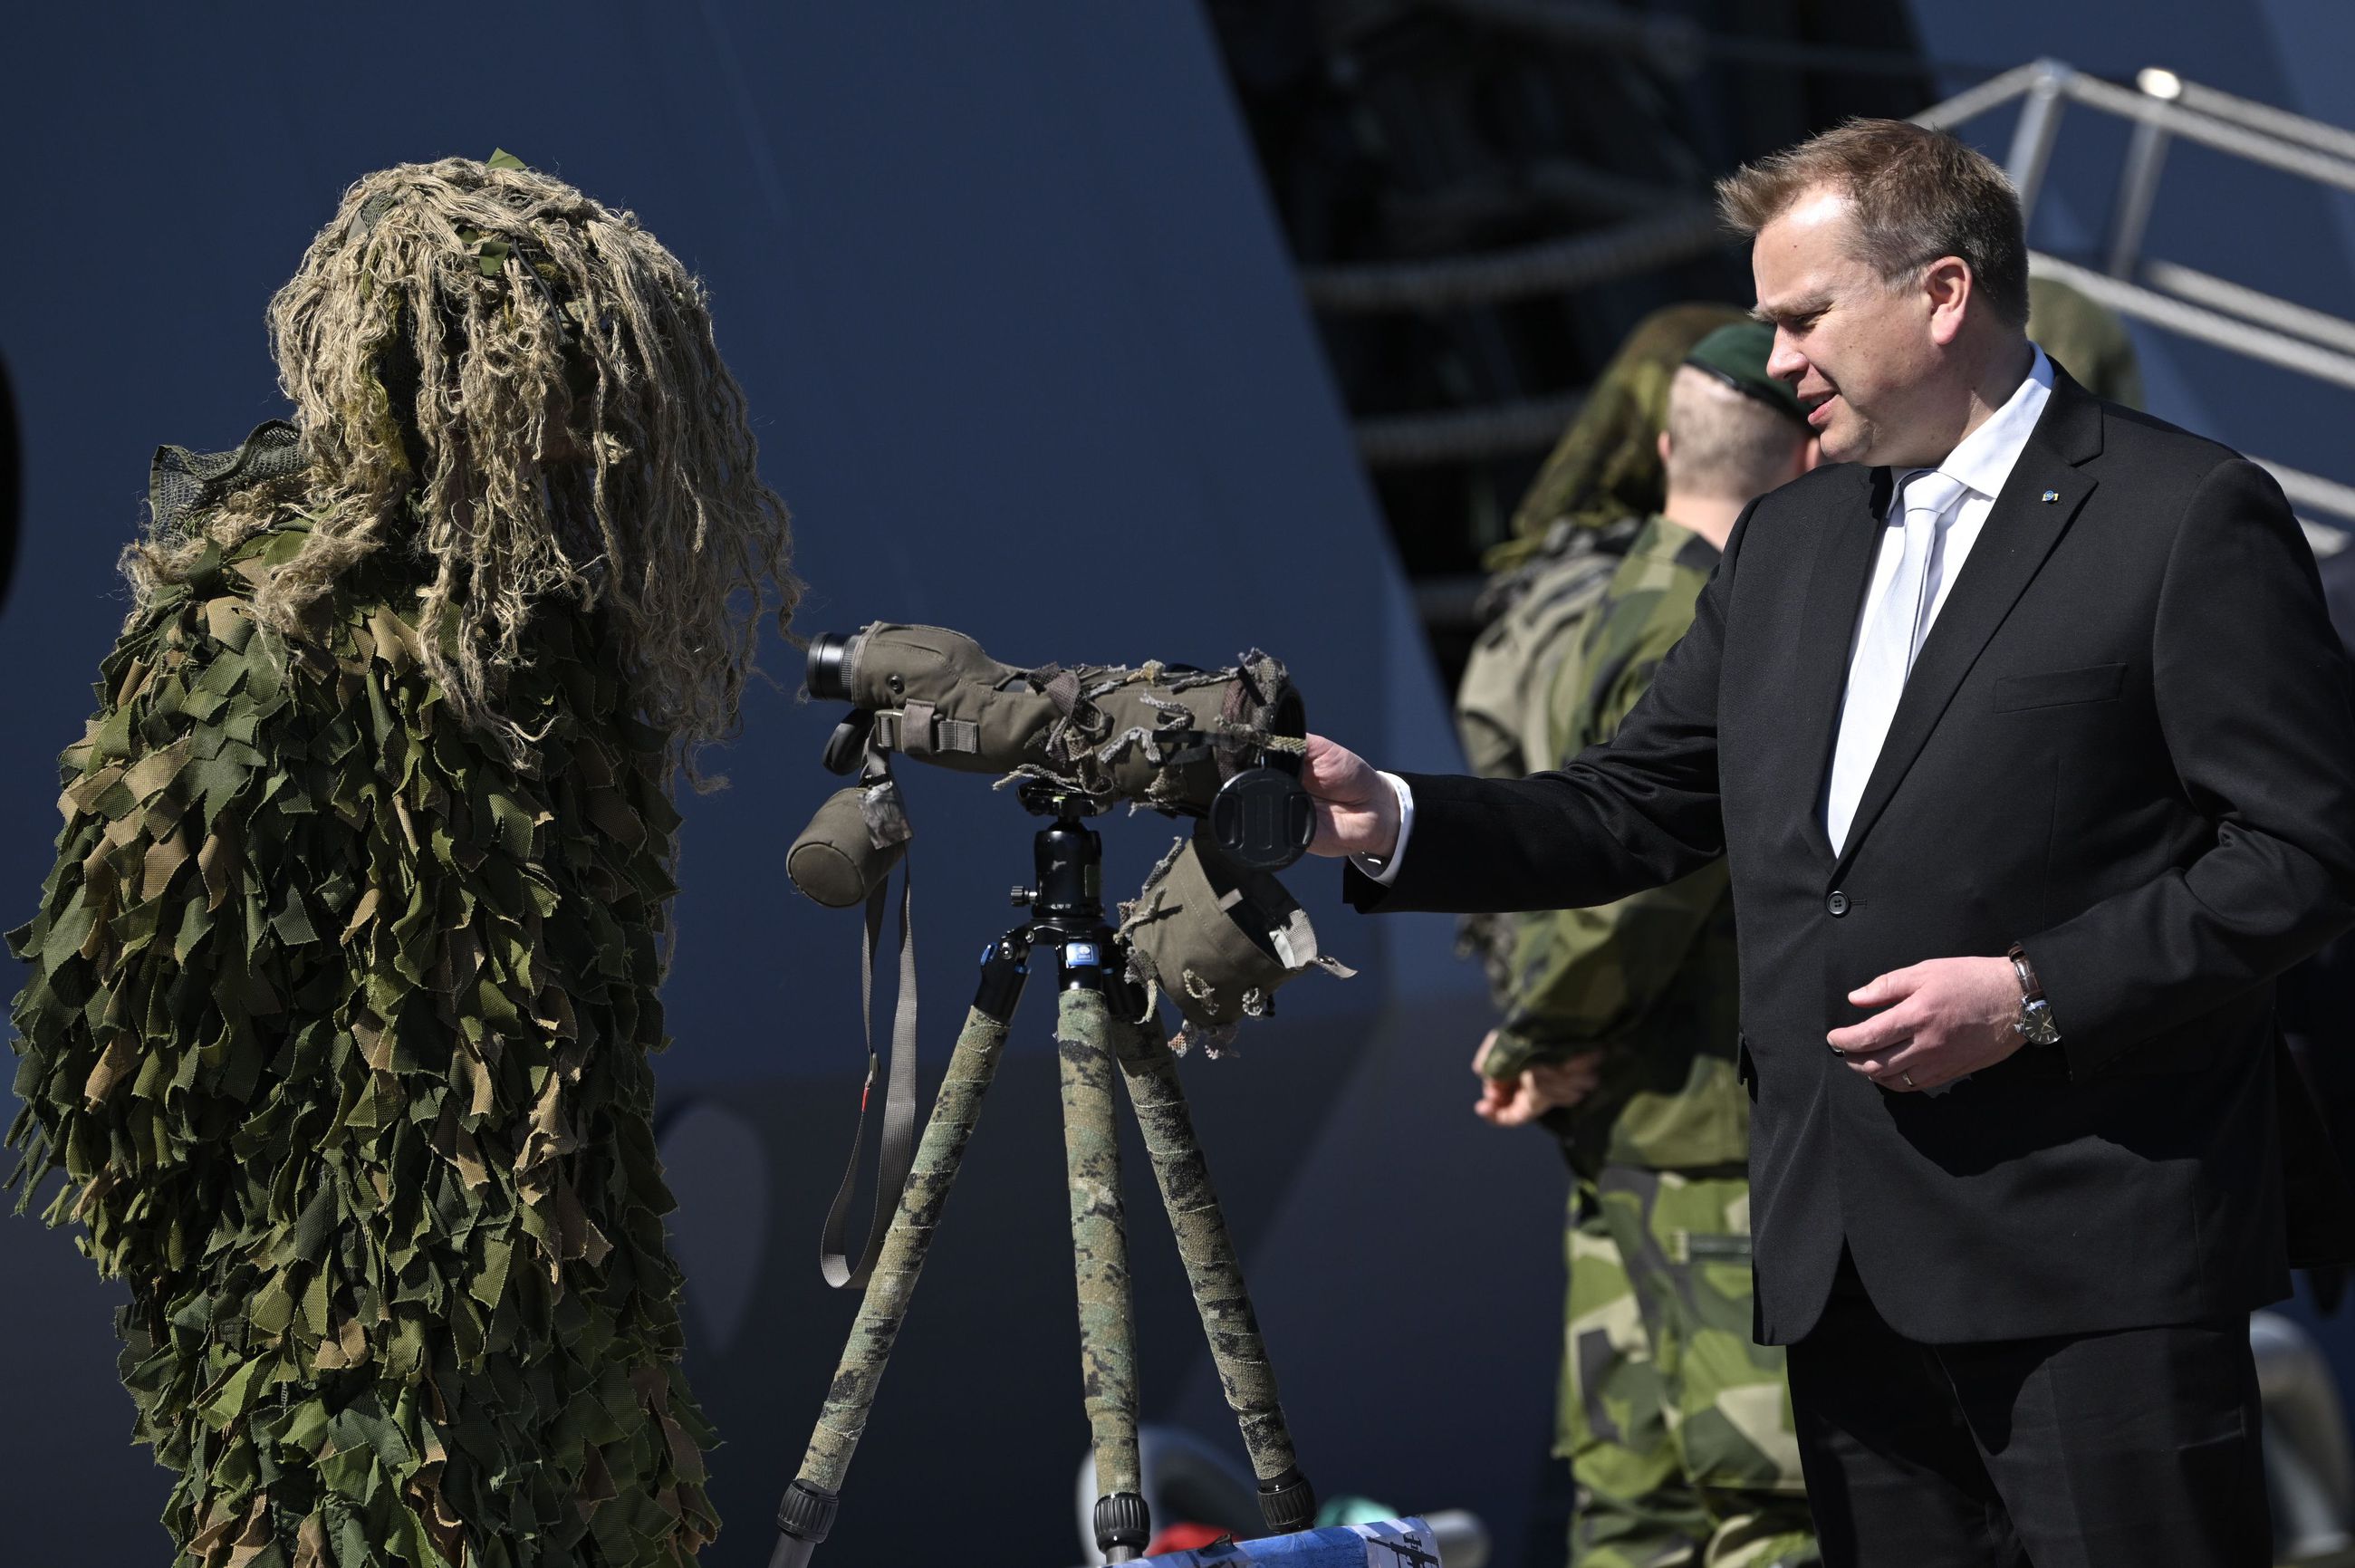 Puolustusministeri Antti Kaikkonen vieraili keskiviikkona Ruotsin puolustusvoimien merivoimien Bergan tukikohdassa Tukholman lähistöllä tutustumassa henkilöstöön, laivoihin ja välineistöön.